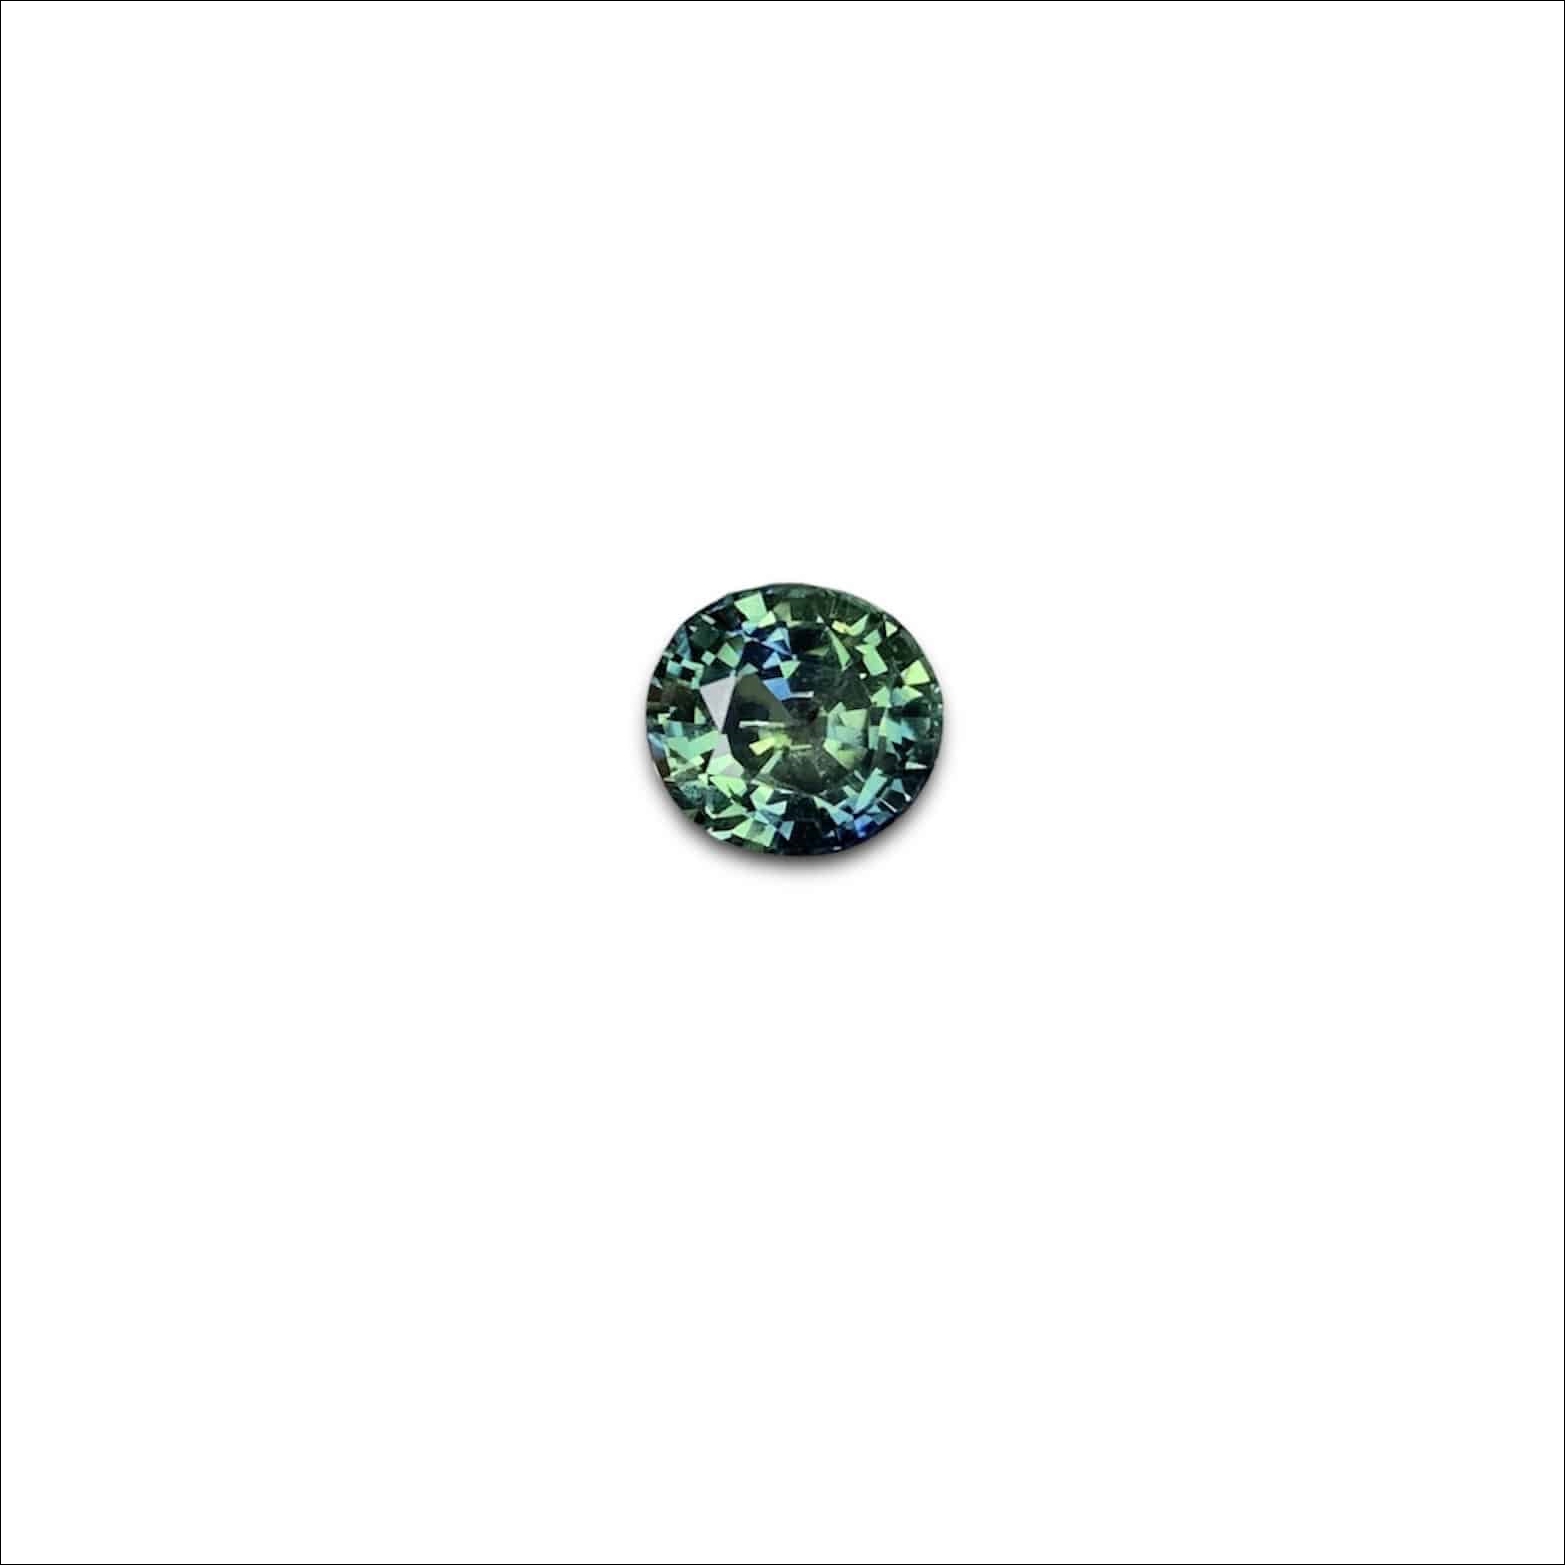 Viên Sapphire màu xanh lục lam 2,29ct - IRSP 234229